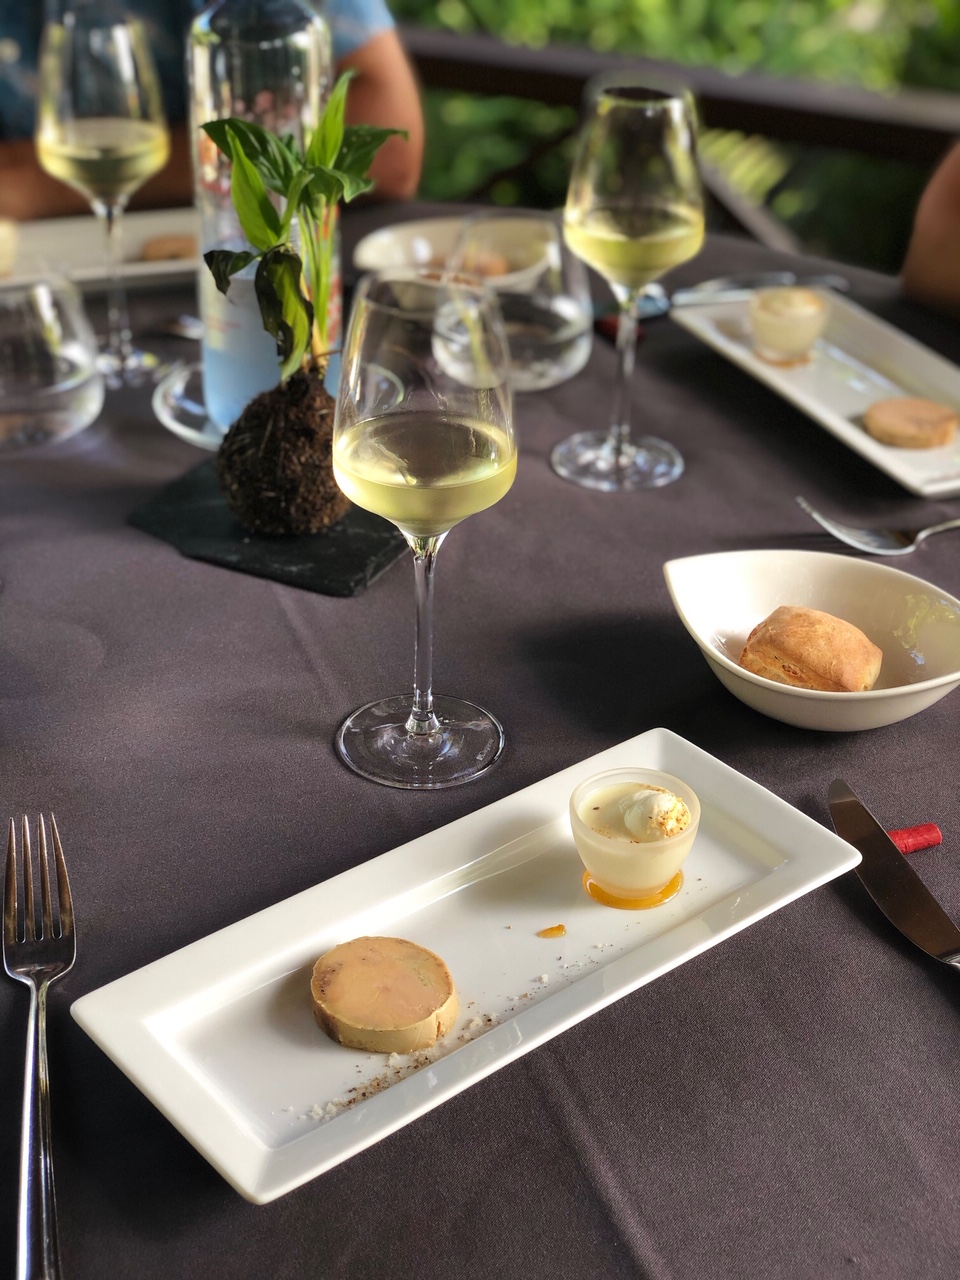 médaillon de foie gras la case pitey